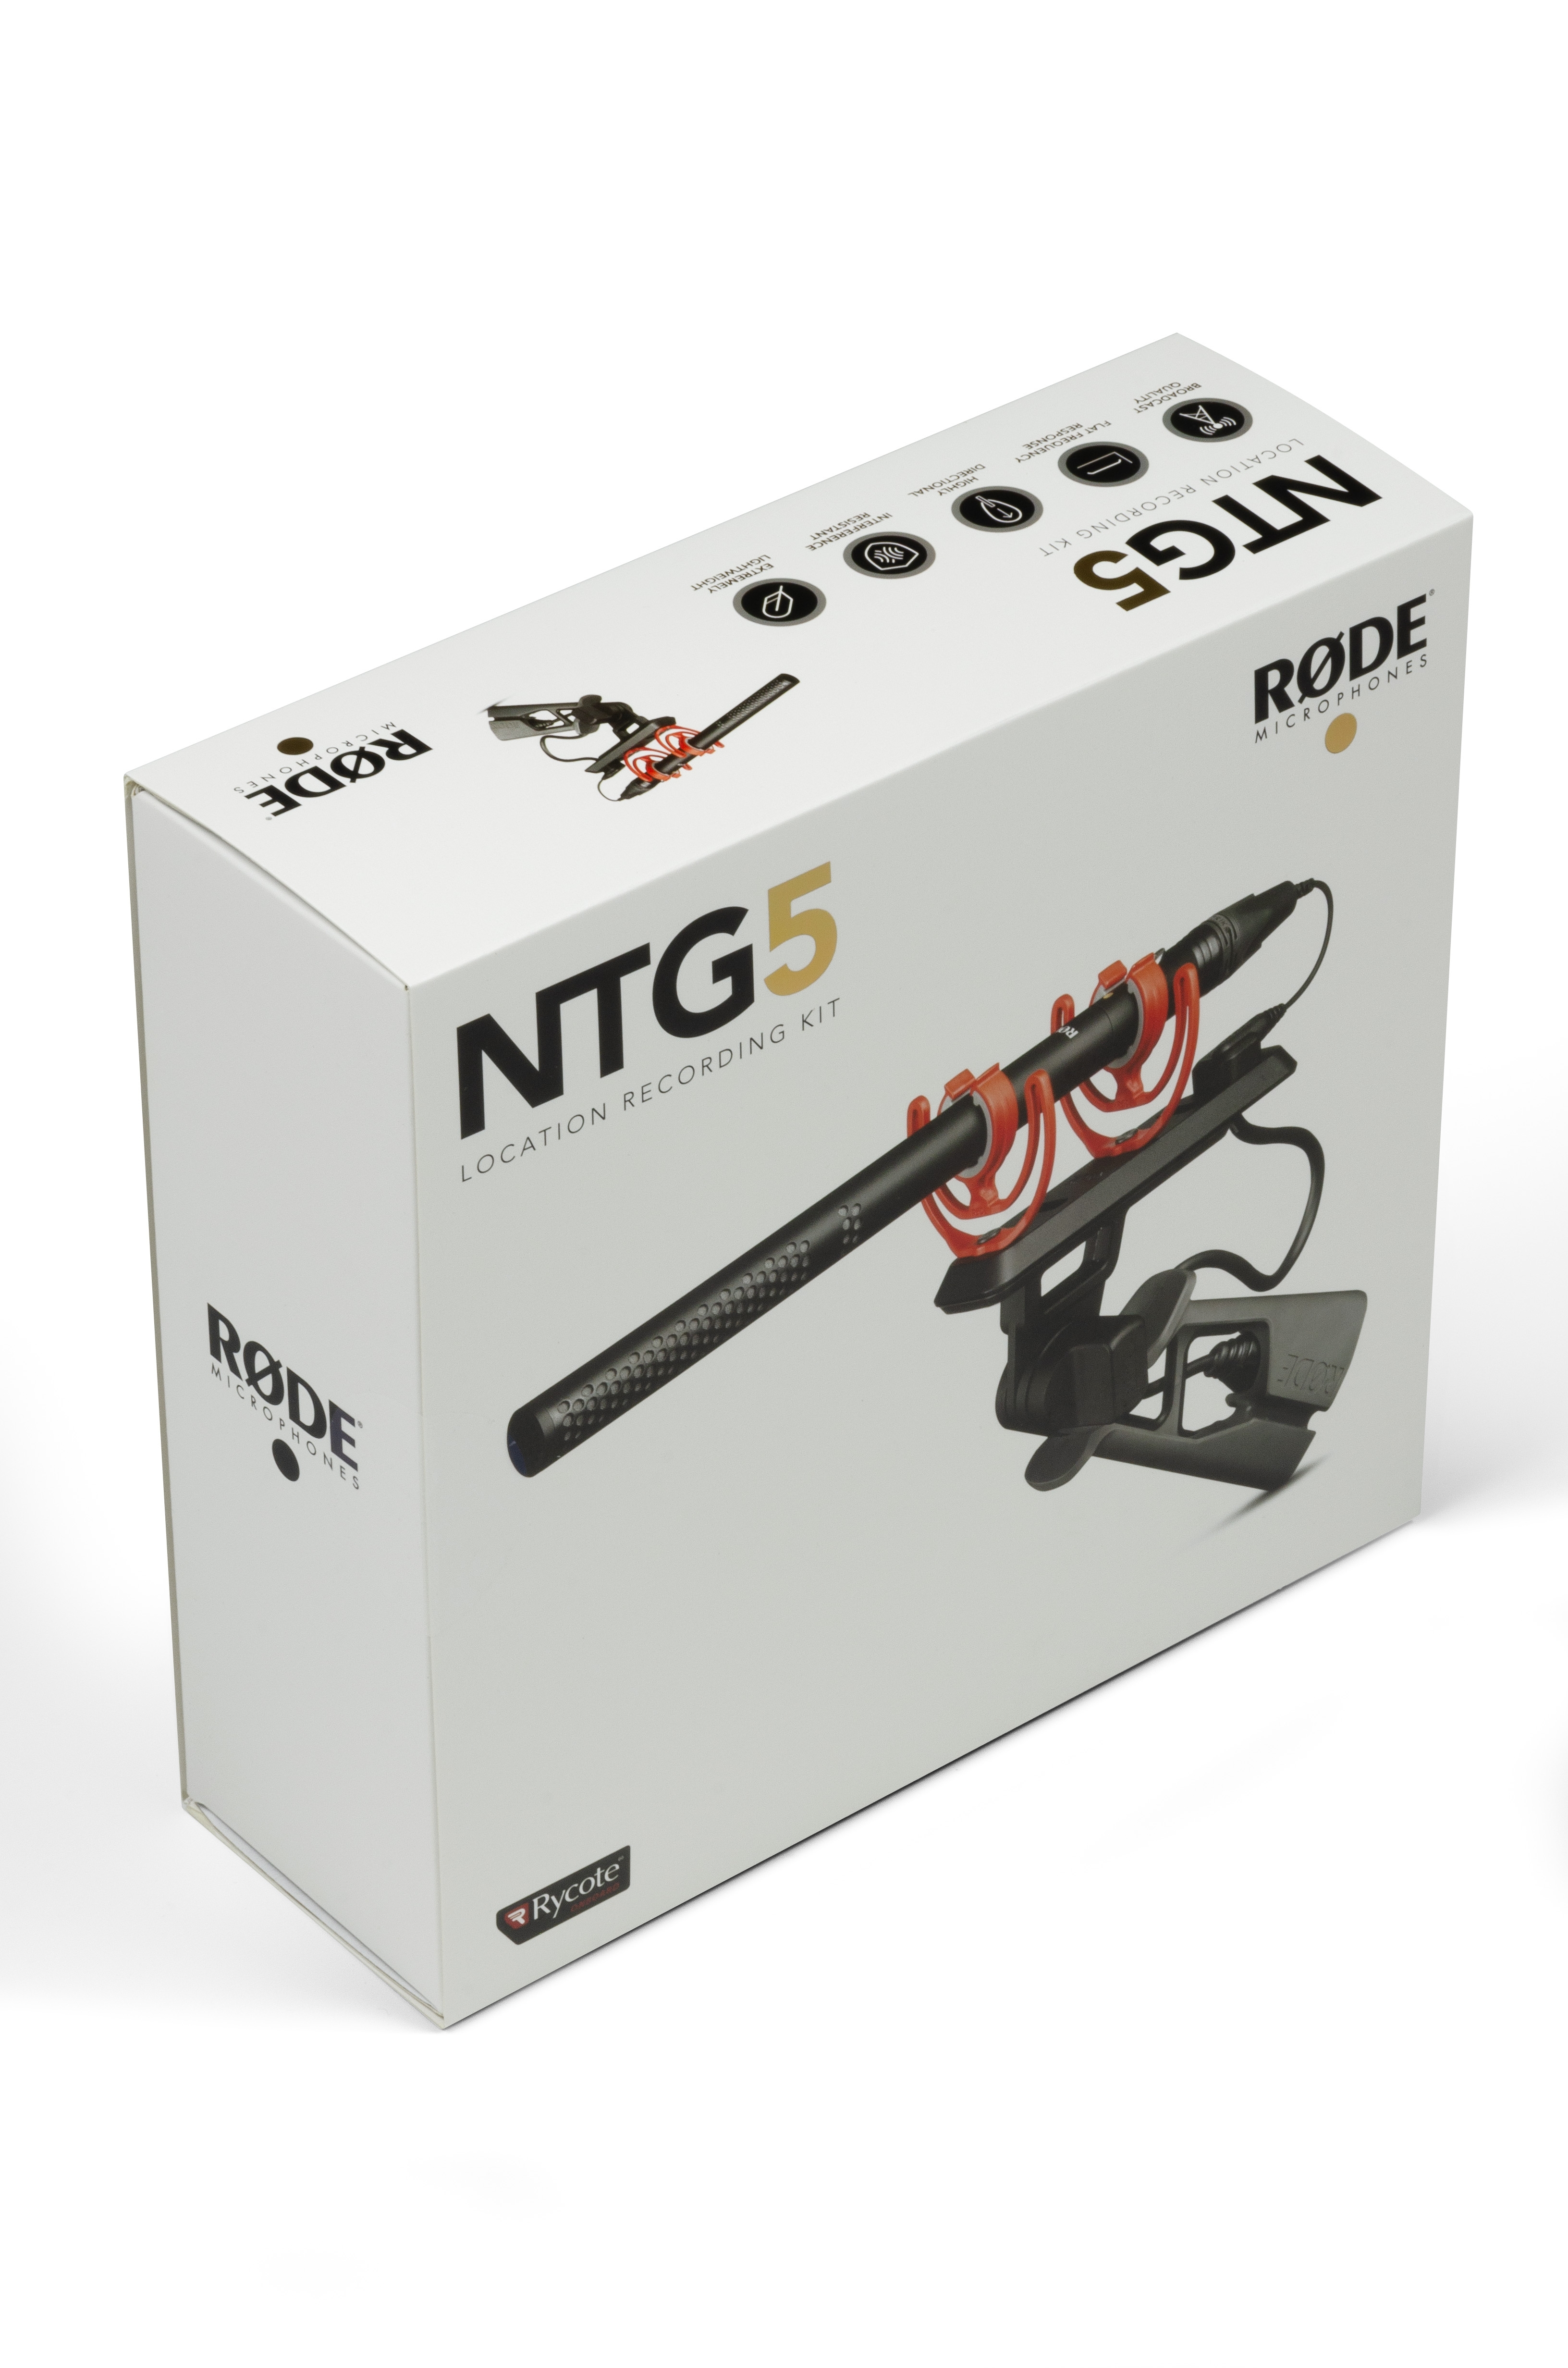 NTG5-KIT